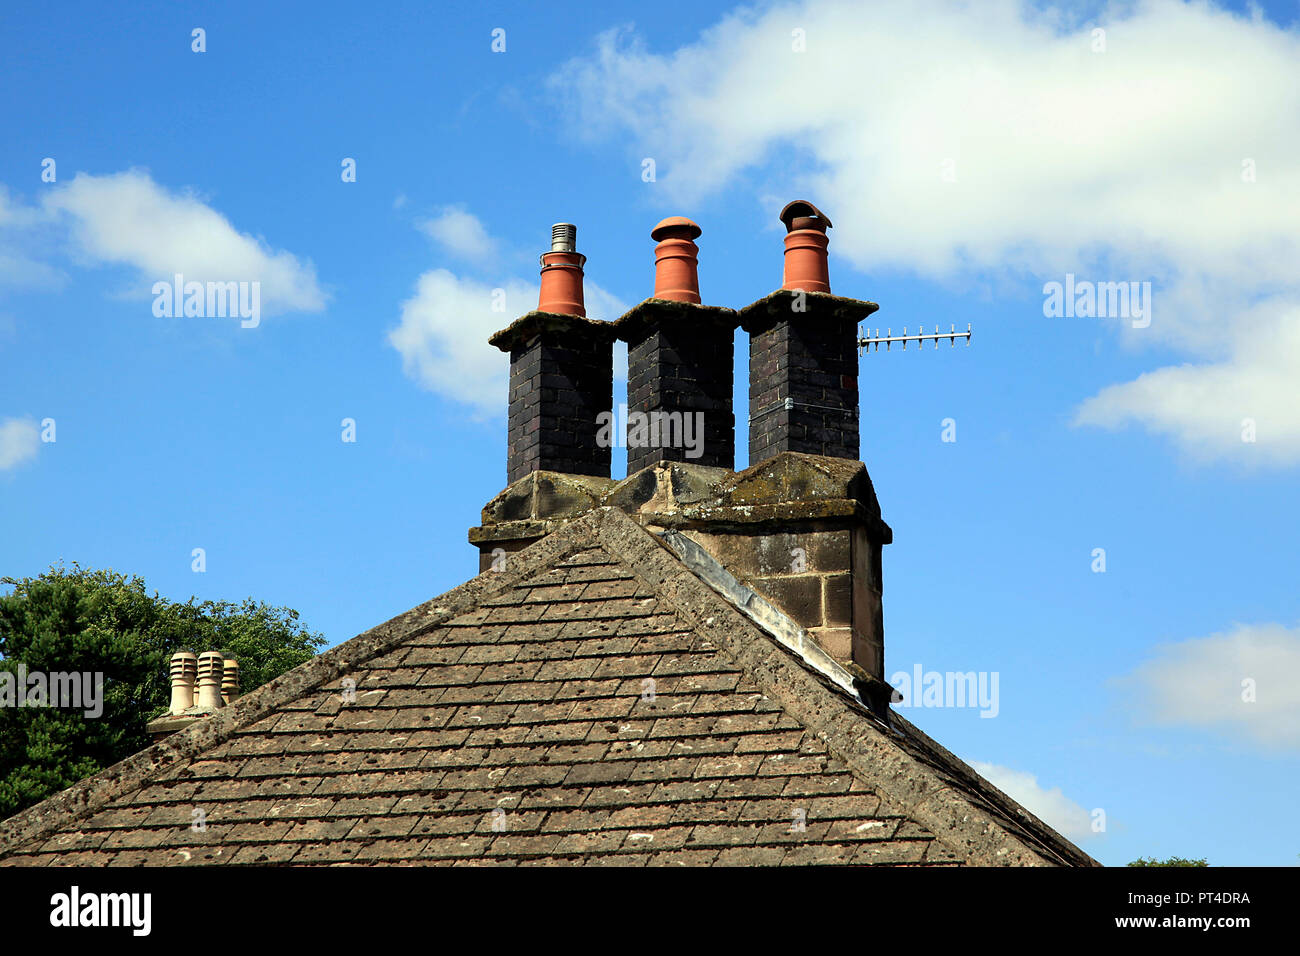 Triple camino sul tetto della casa Foto Stock